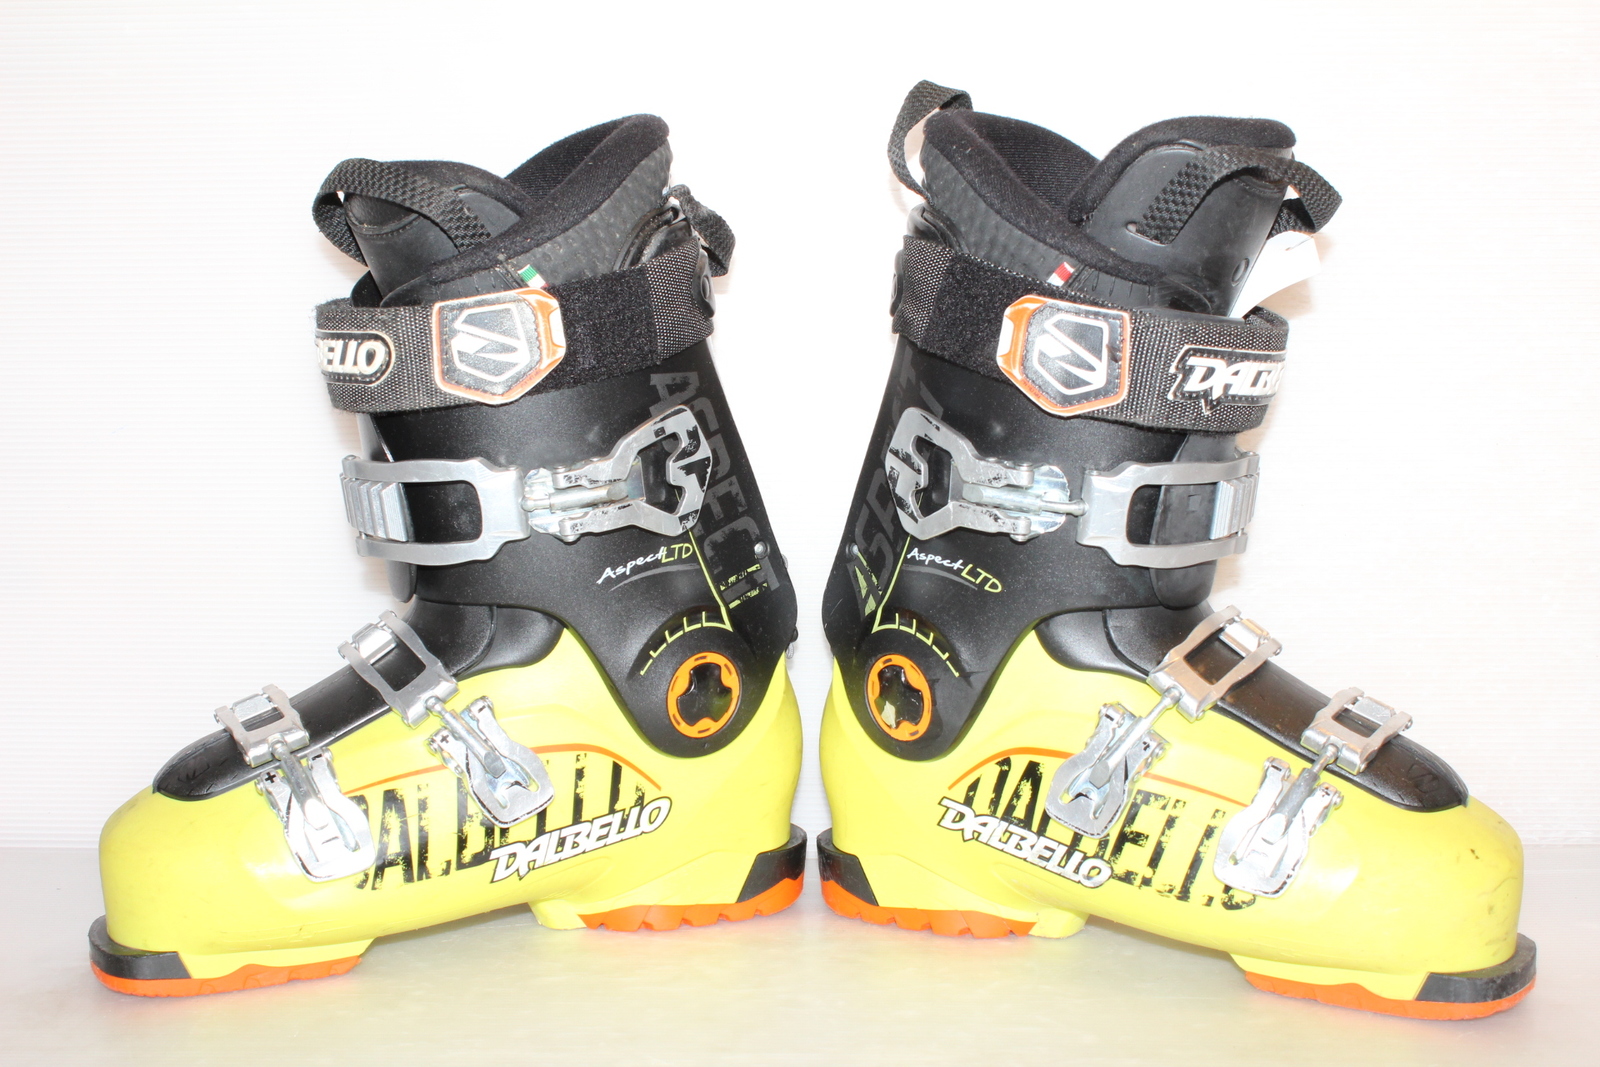 Lyžařské boty Dalbello Aspect LTD vel. EU41 flexe 80